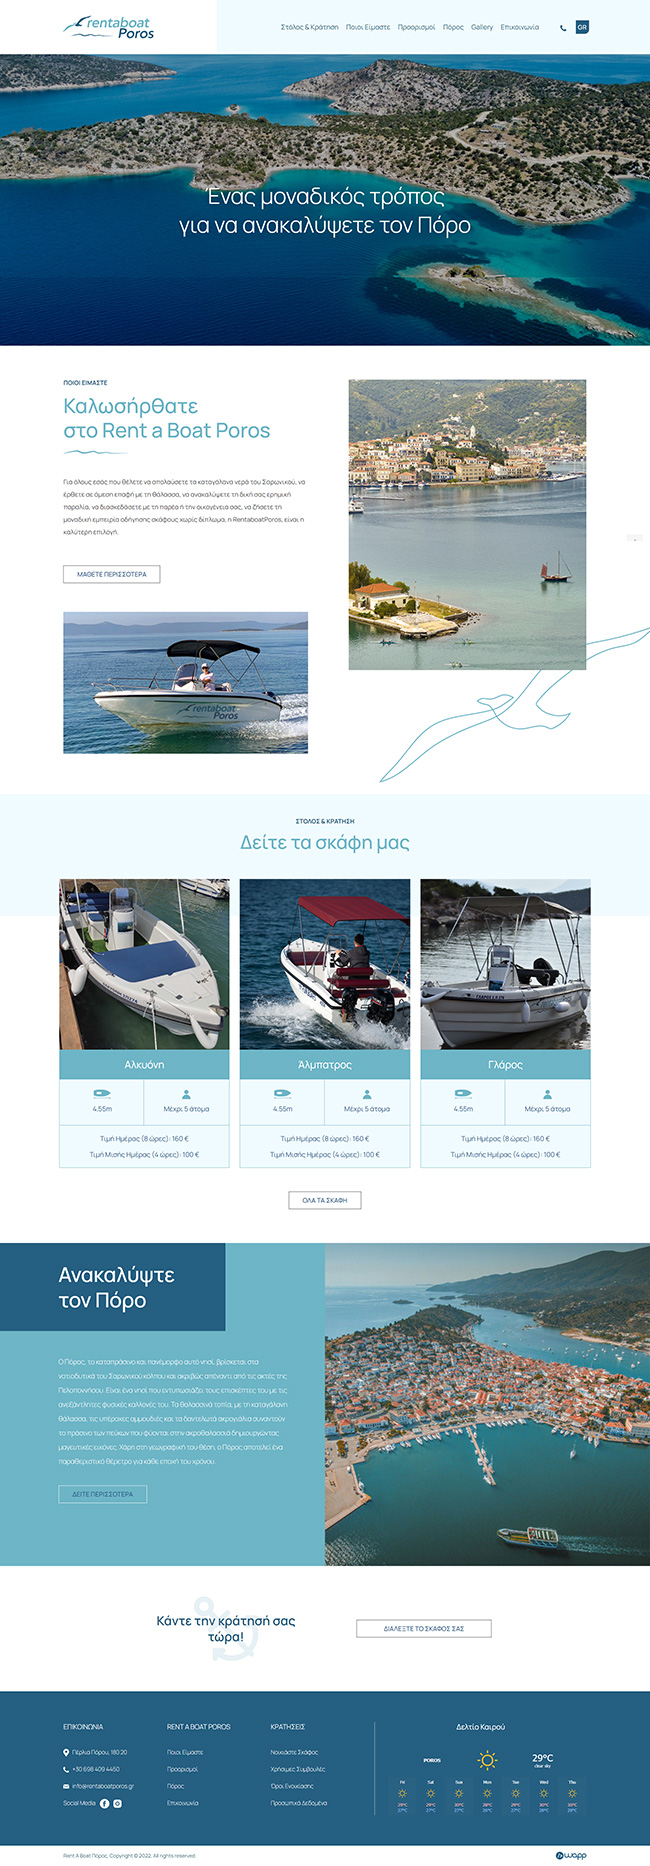 Κατασκευή responsive ιστοσελίδας για την Rent a Boat Poros.